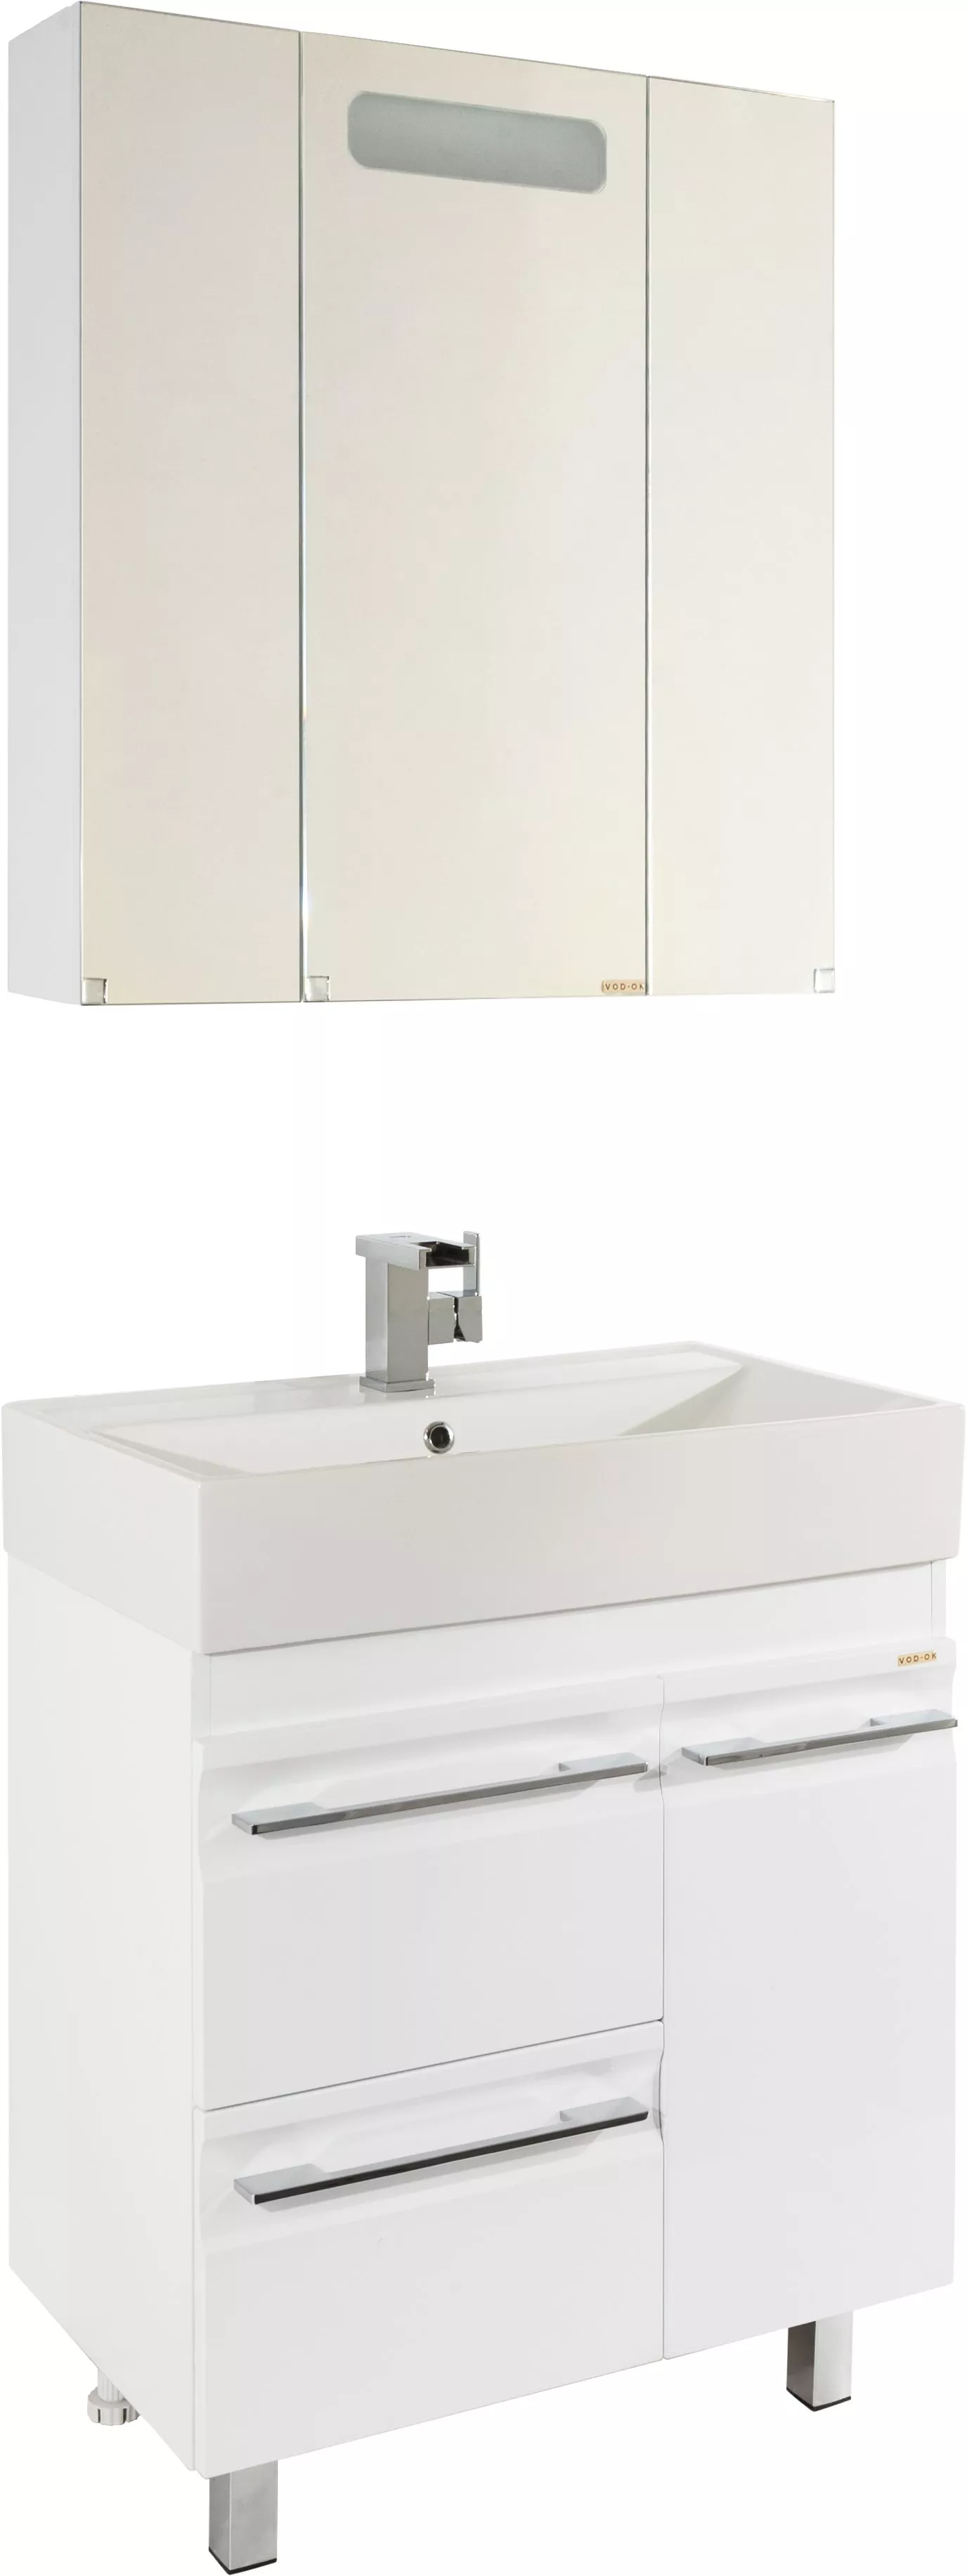 Мебель для ванной Vod-Ok Мальта 70 с ящиками, белая, размер 70, цвет белый - фото 1